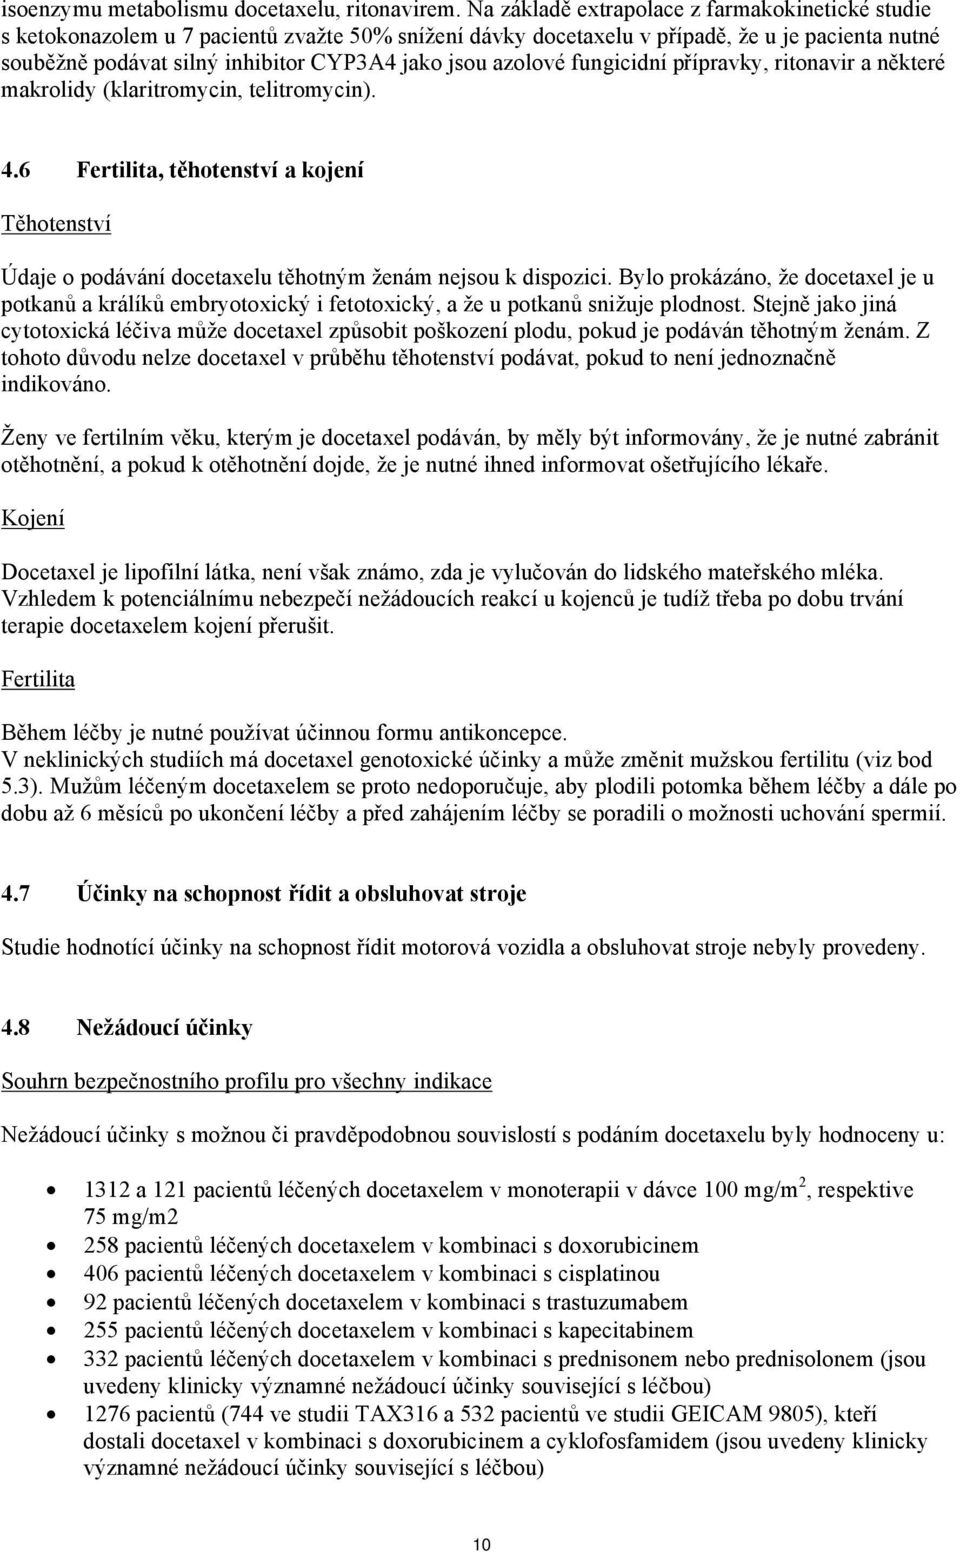 azolové fungicidní přípravky, ritonavir a některé makrolidy (klaritromycin, telitromycin). 4.